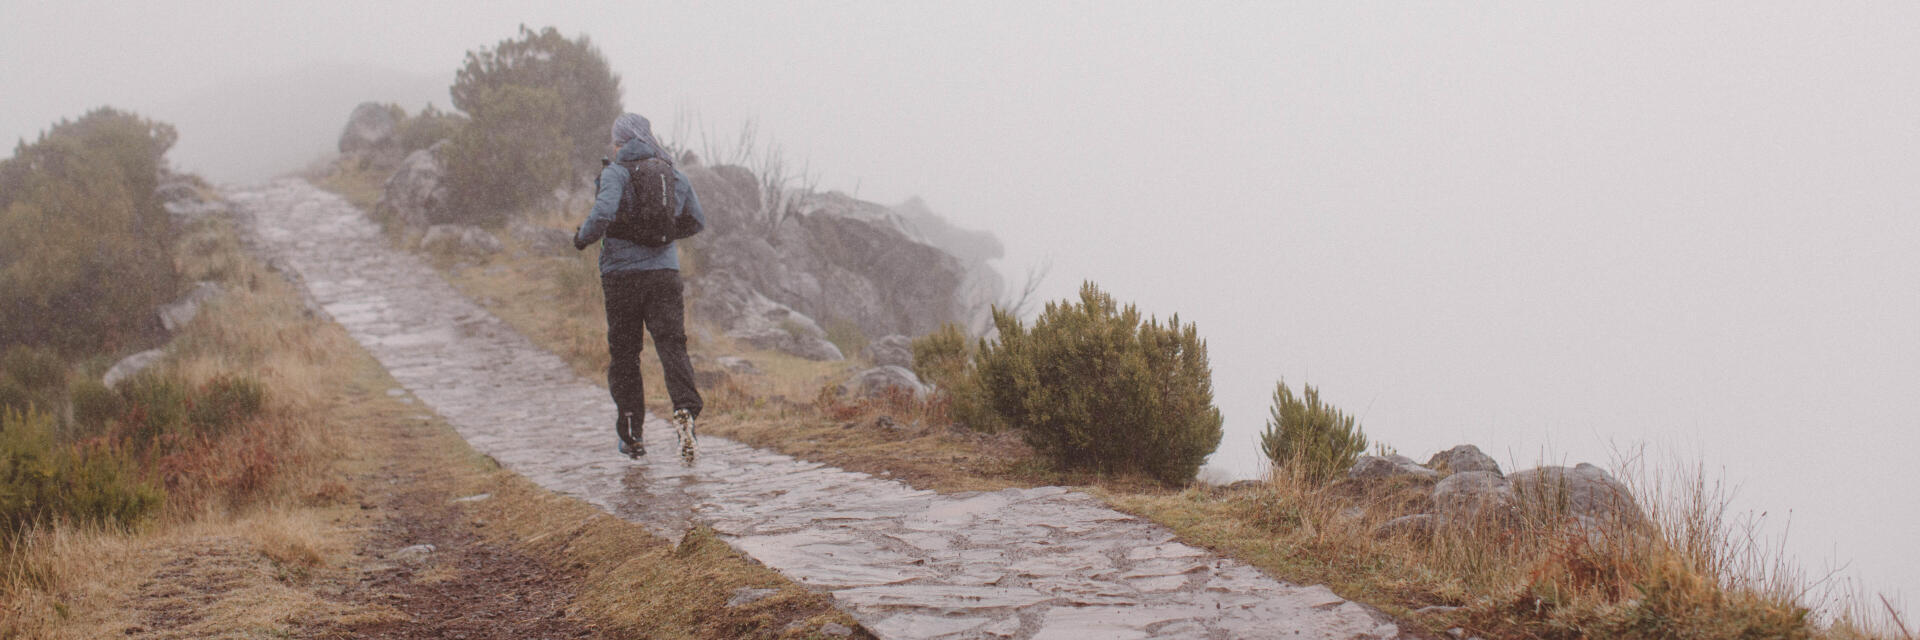 Come gestire i trail sotto la pioggia?